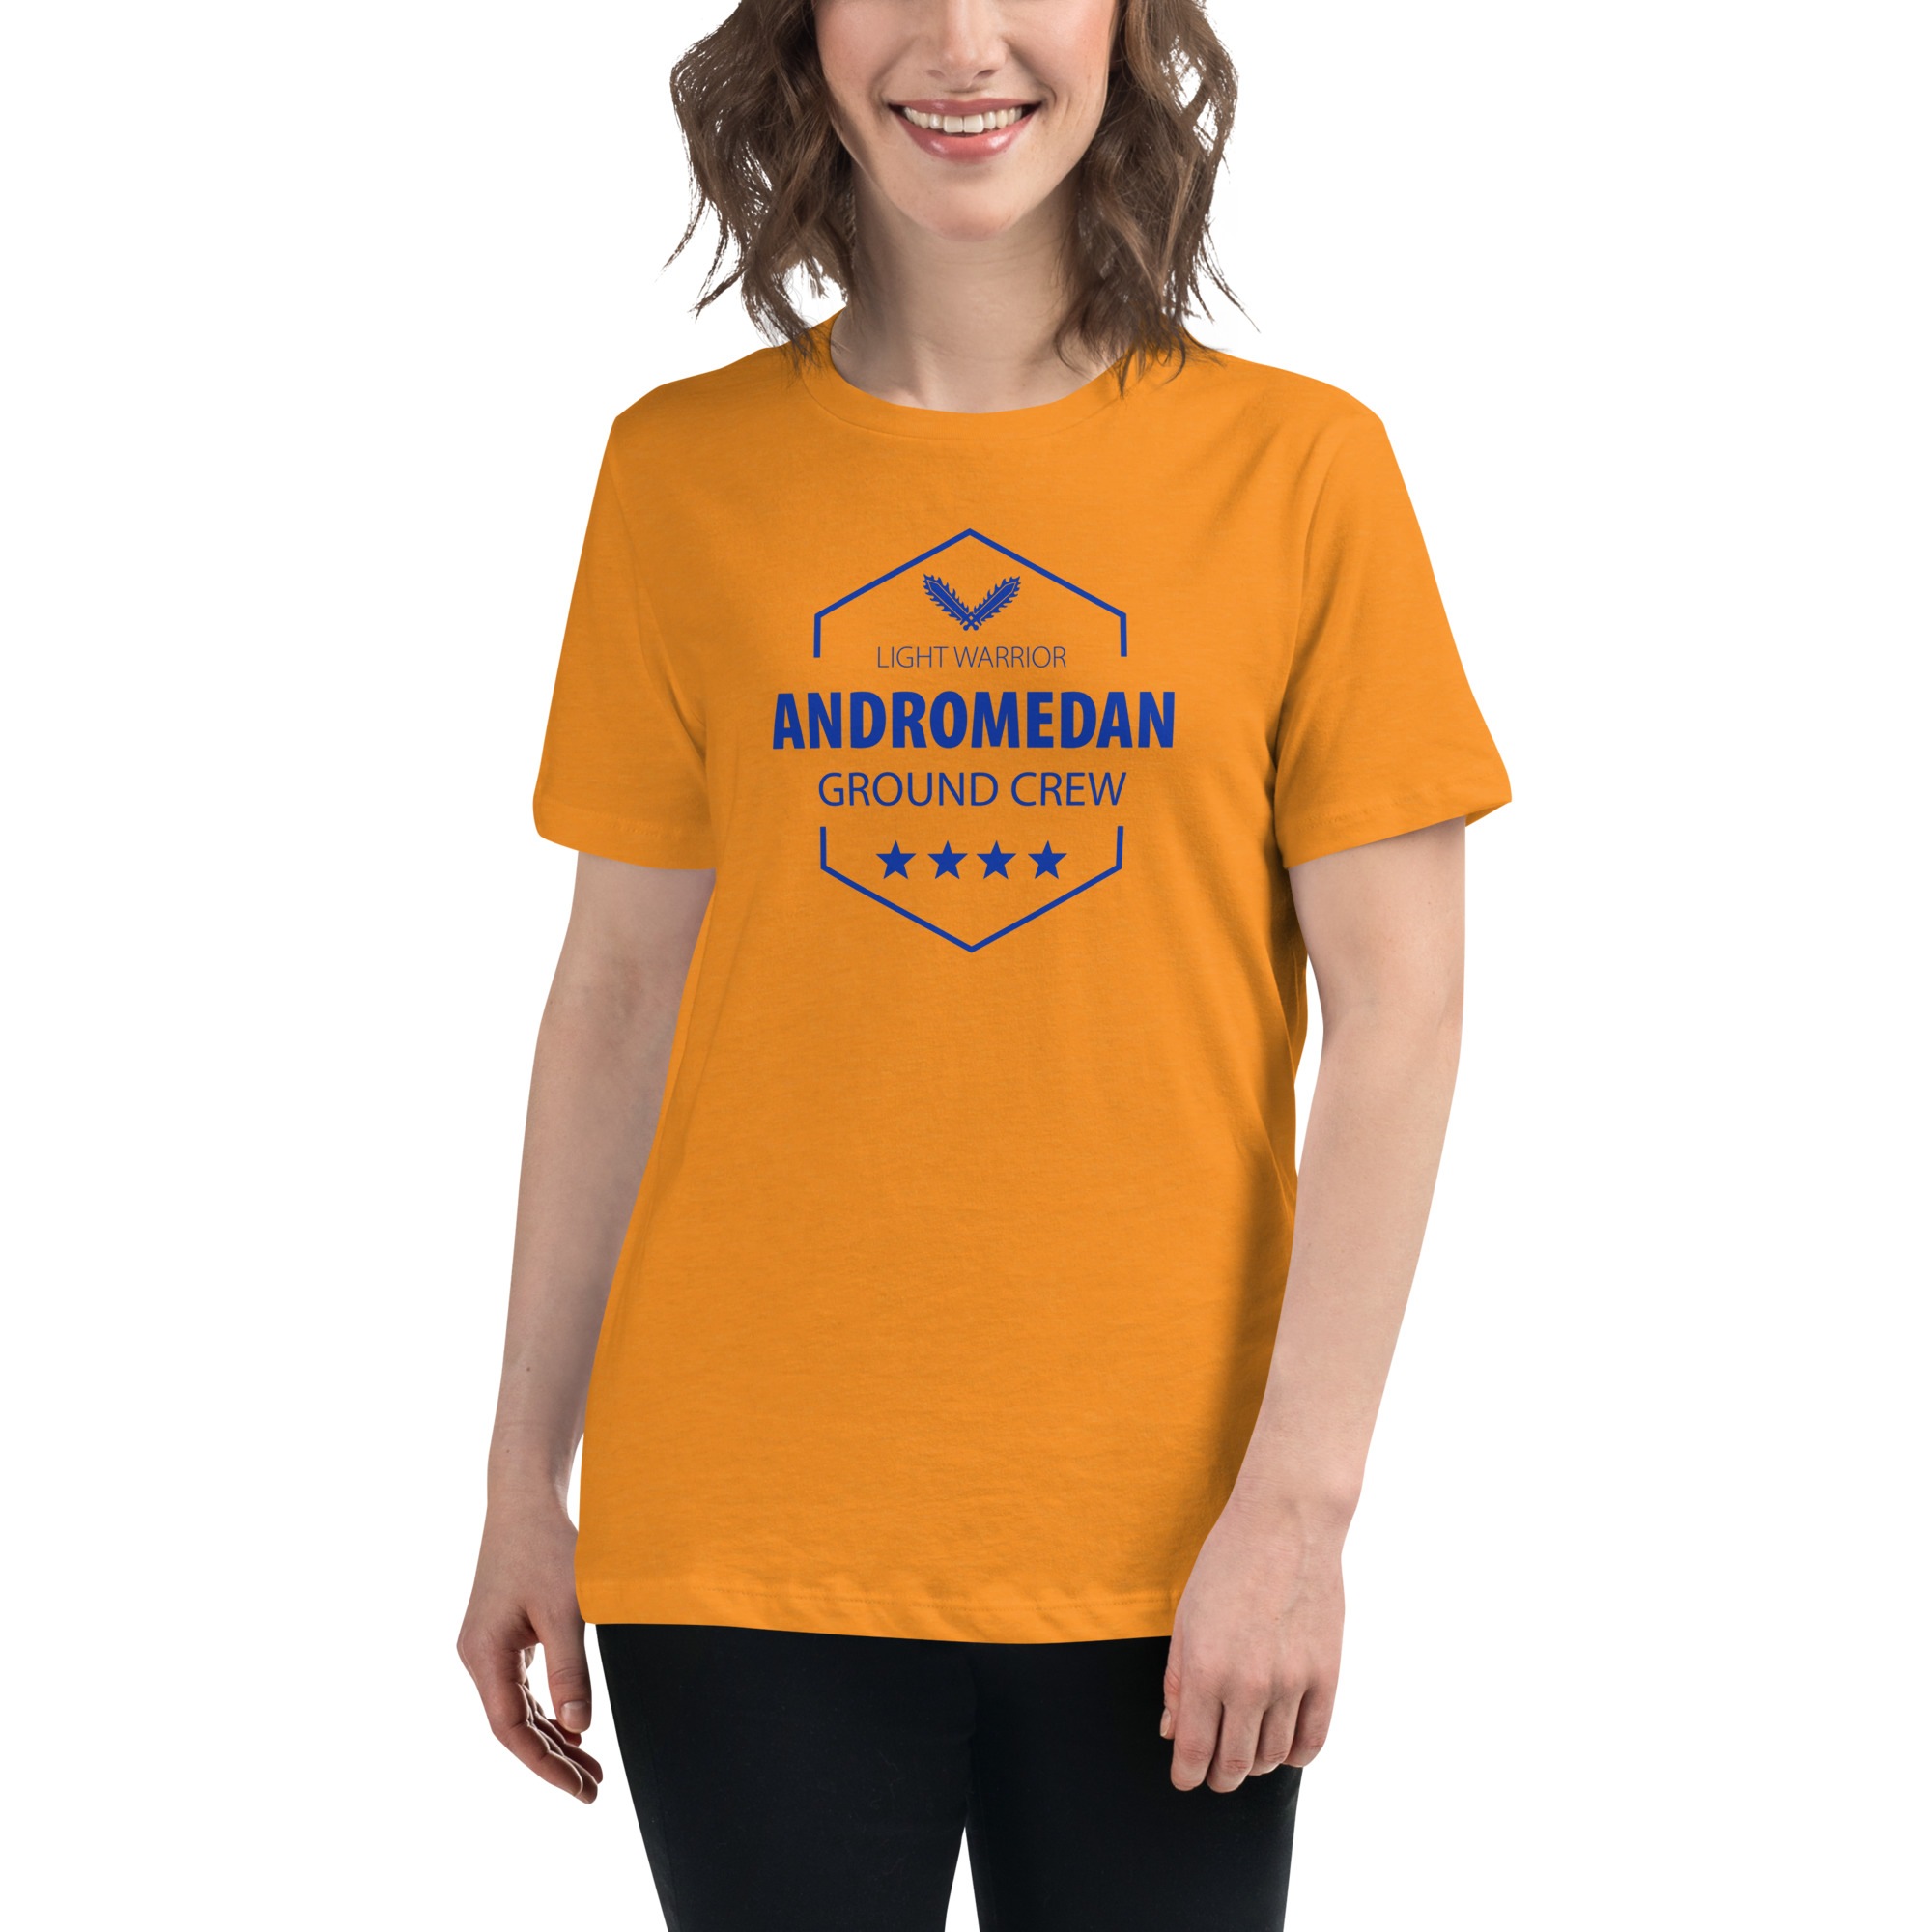 Andromedan Ground Crew Tshirt